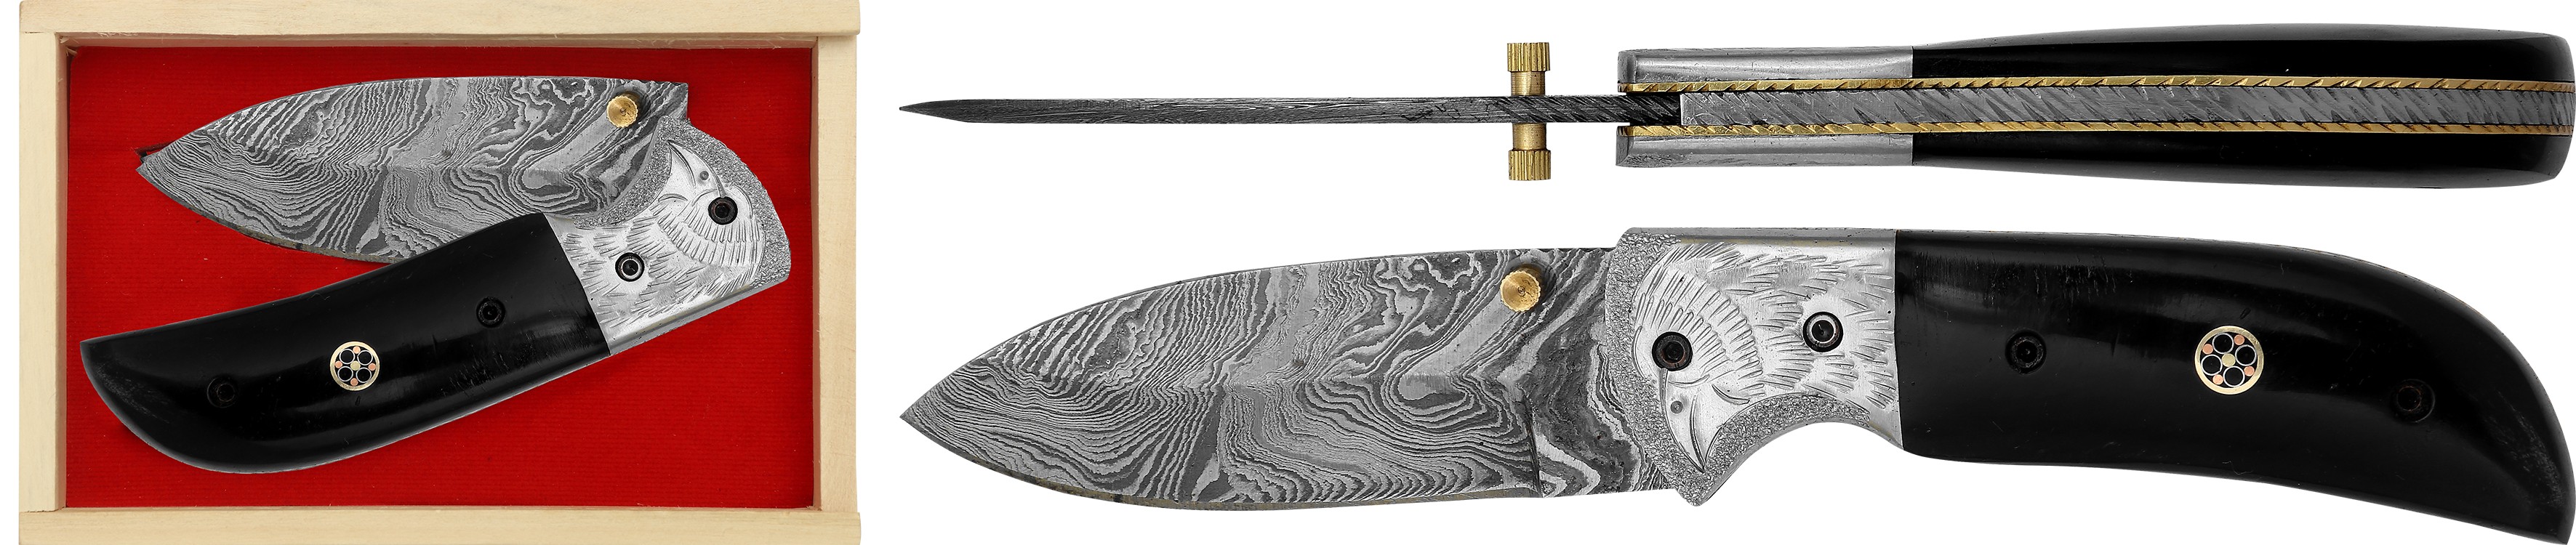 Cuchillo de colección Damasco Excellence 12 cm con cuerno